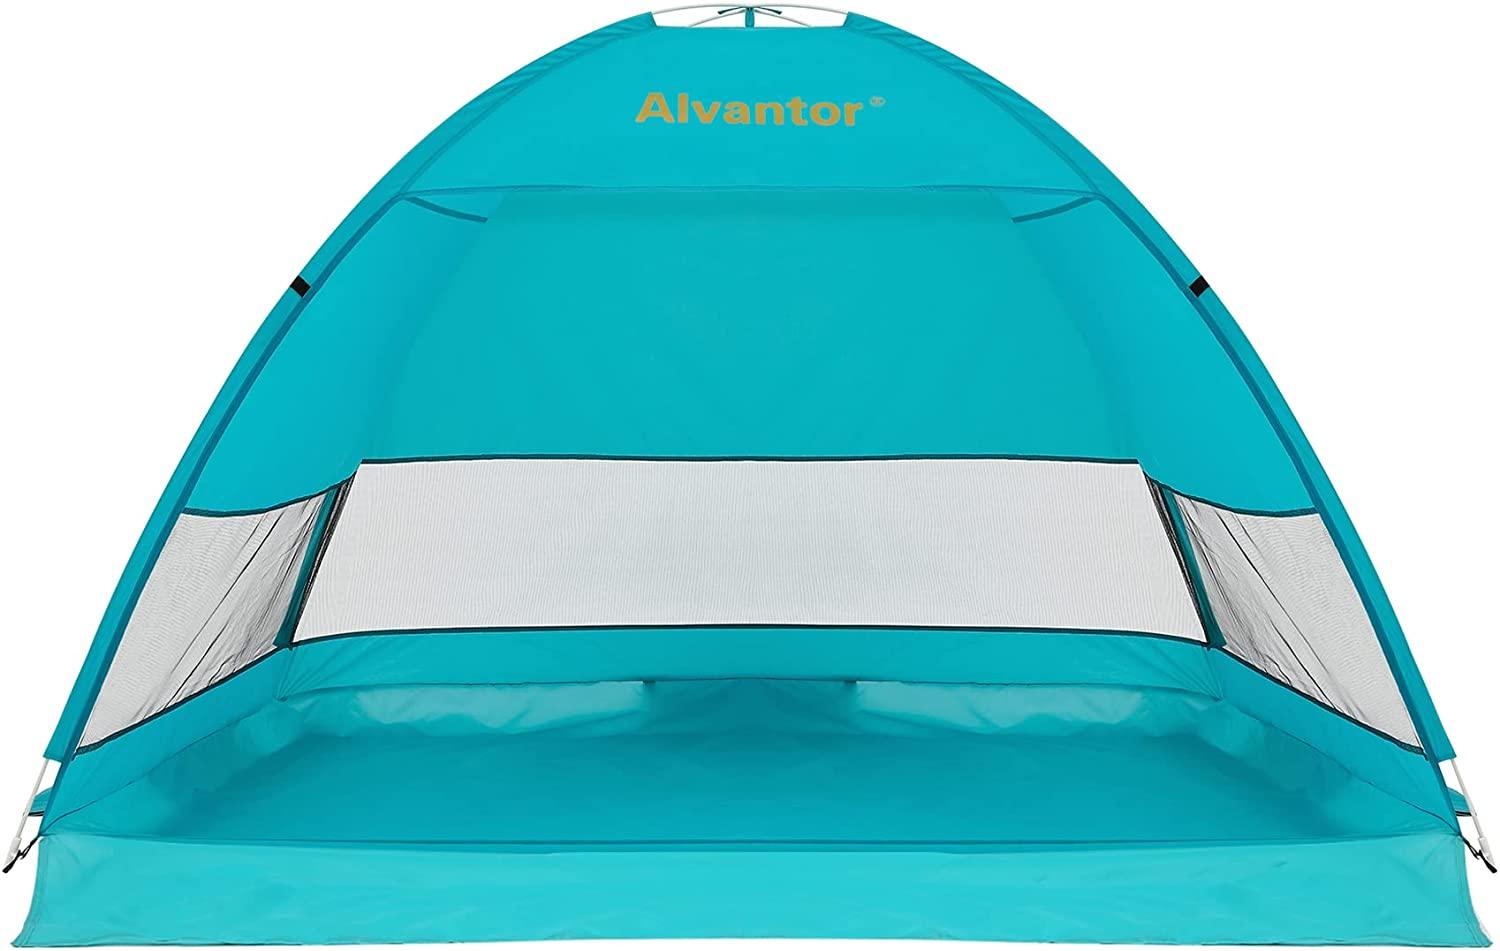 Alvantor Tech Coolhut Beach Tent